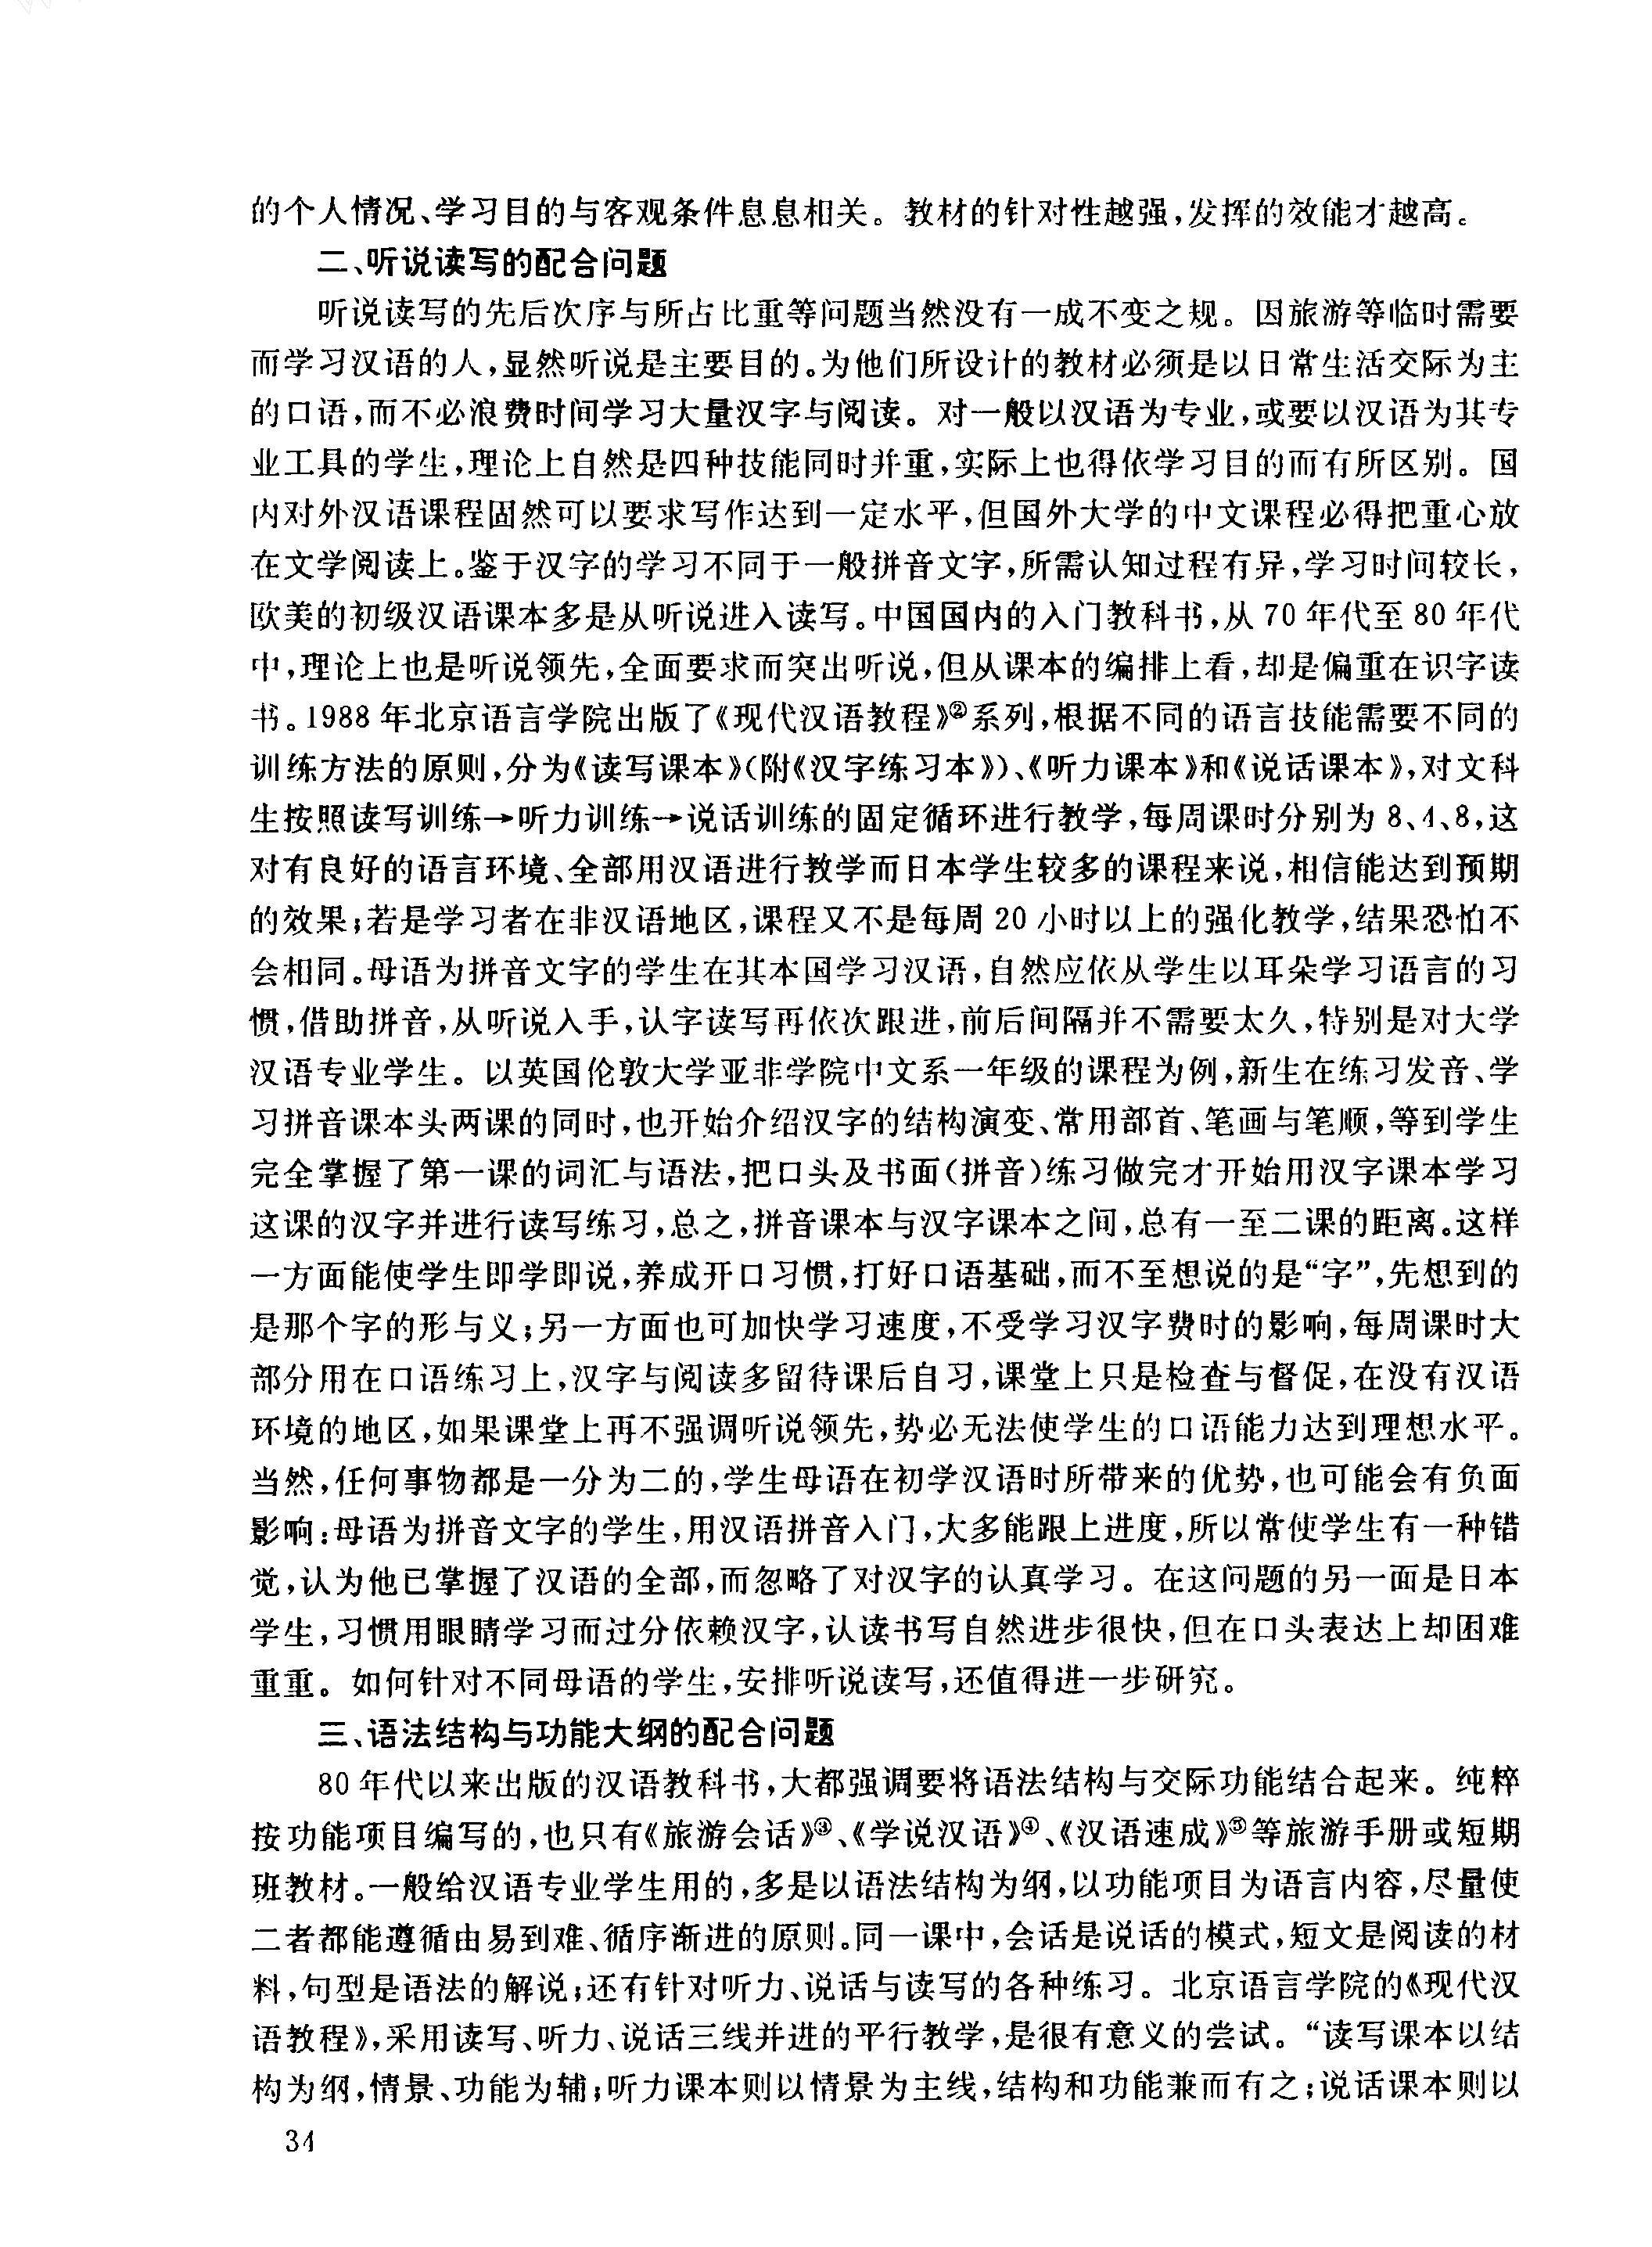 初级汉语教材的编写问题